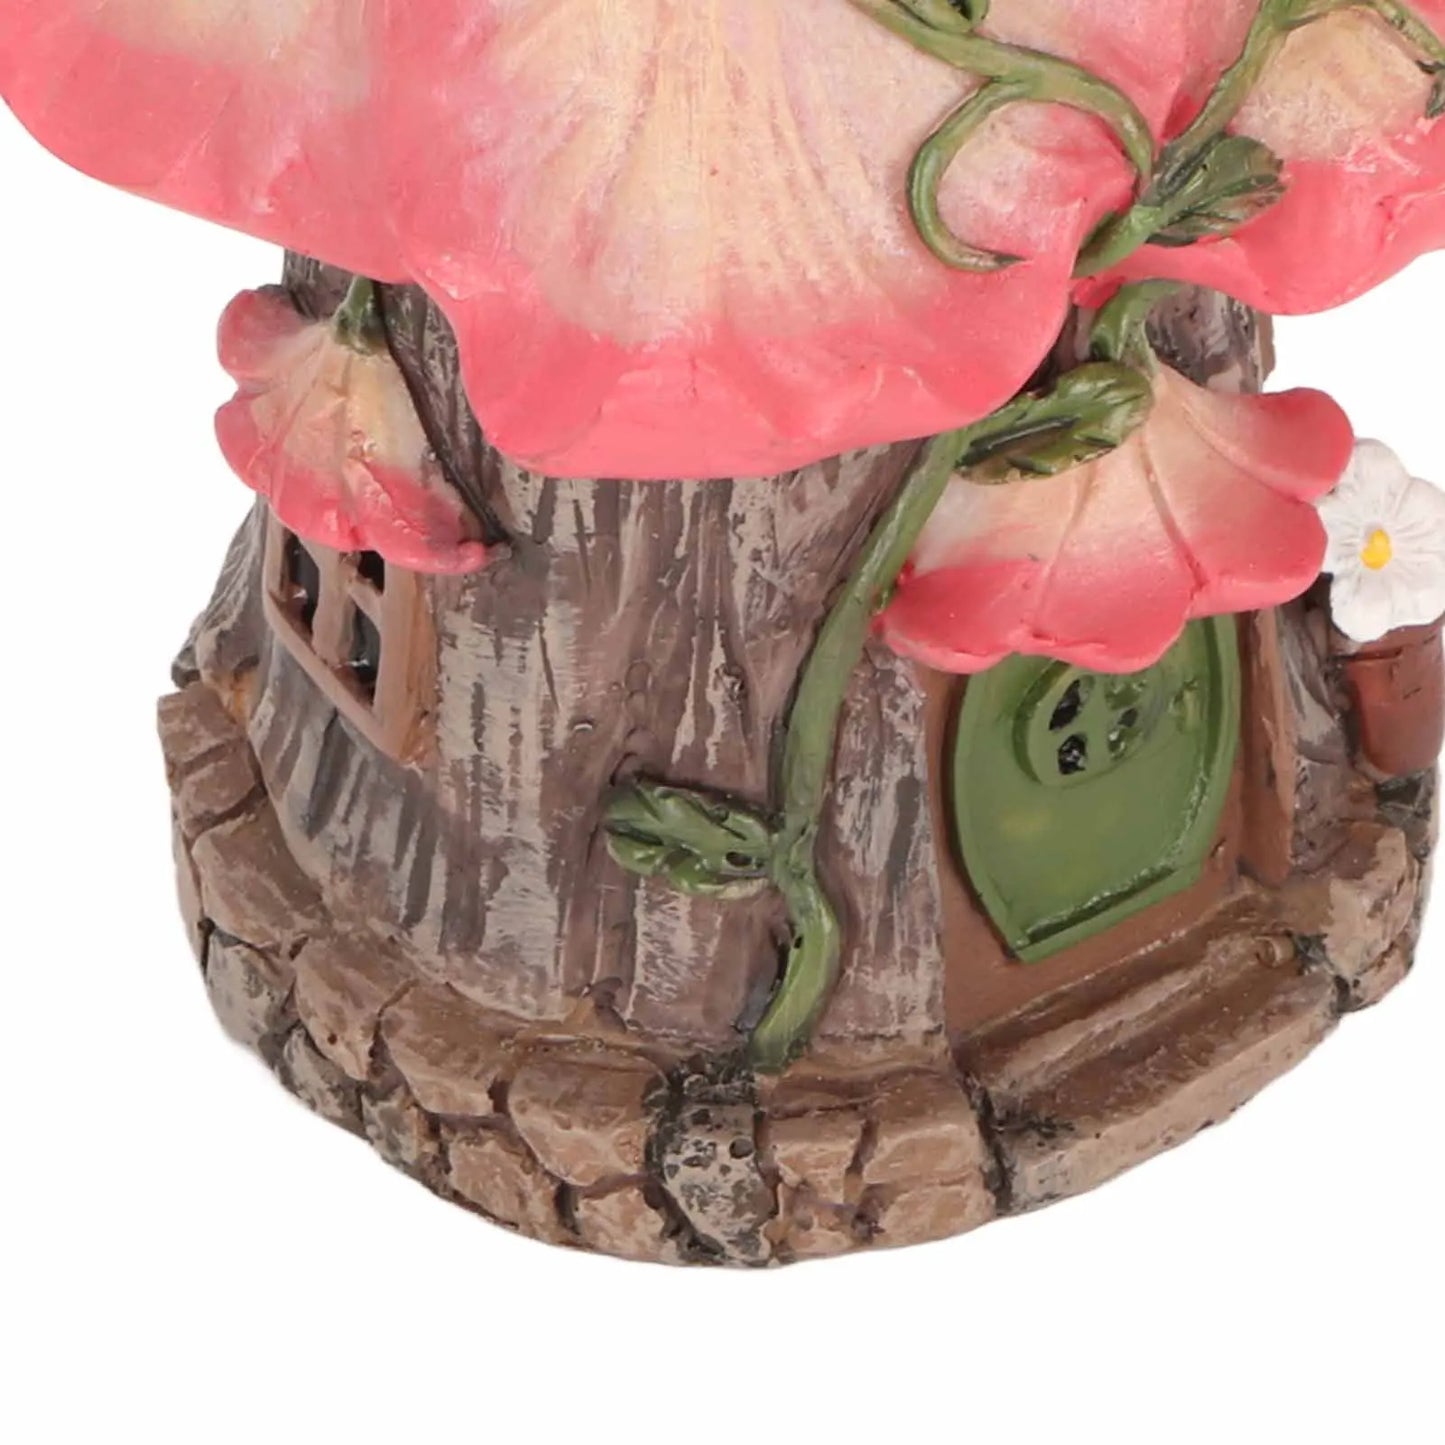 Fairy Tale World Gnome Dwarf Grădină Peisagistică Casă Rășină Crafts Restaurant Grădină Accesorii pentru decorațiuni pentru casă